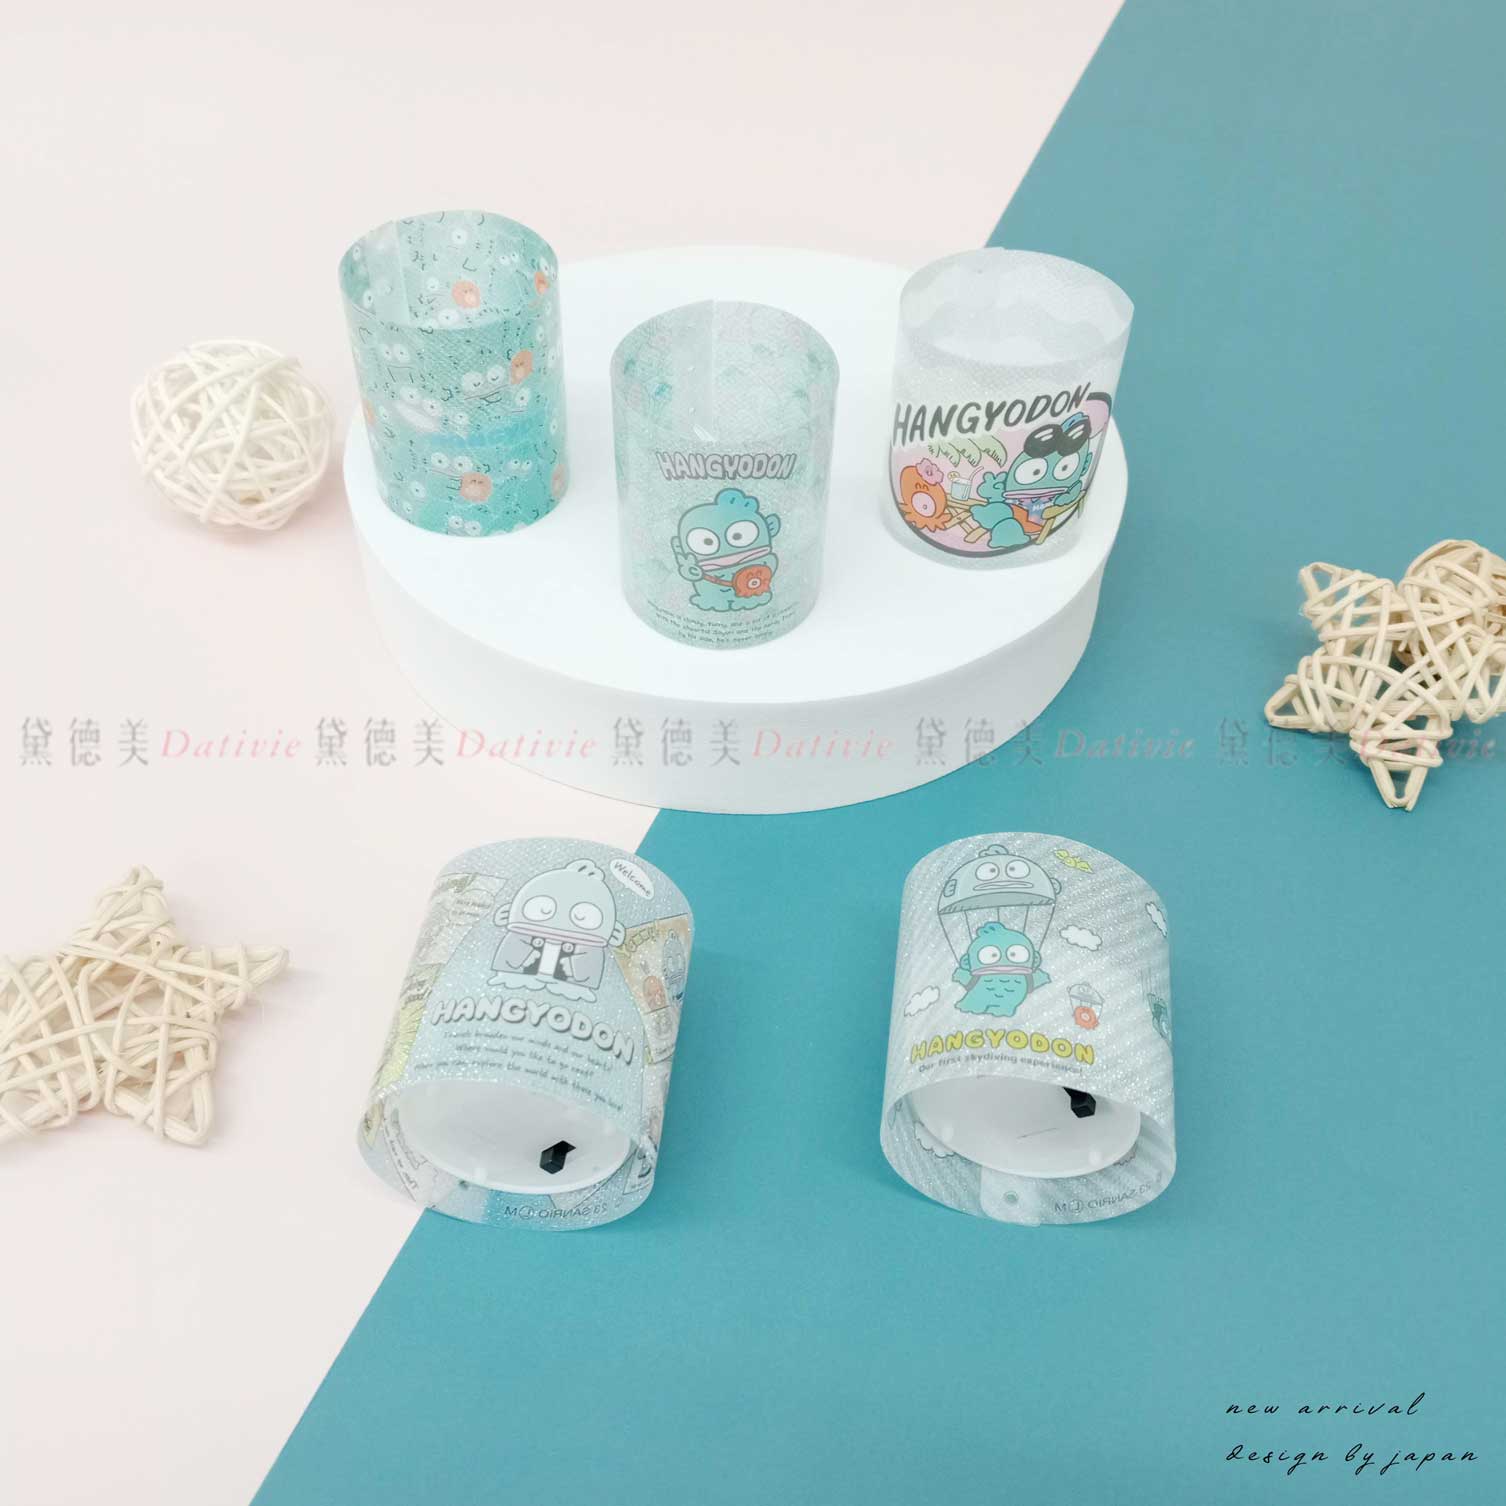 燭光小夜燈扭蛋 全五種-人魚漢頓 三麗鷗 Sanrio 日本進口正版授權